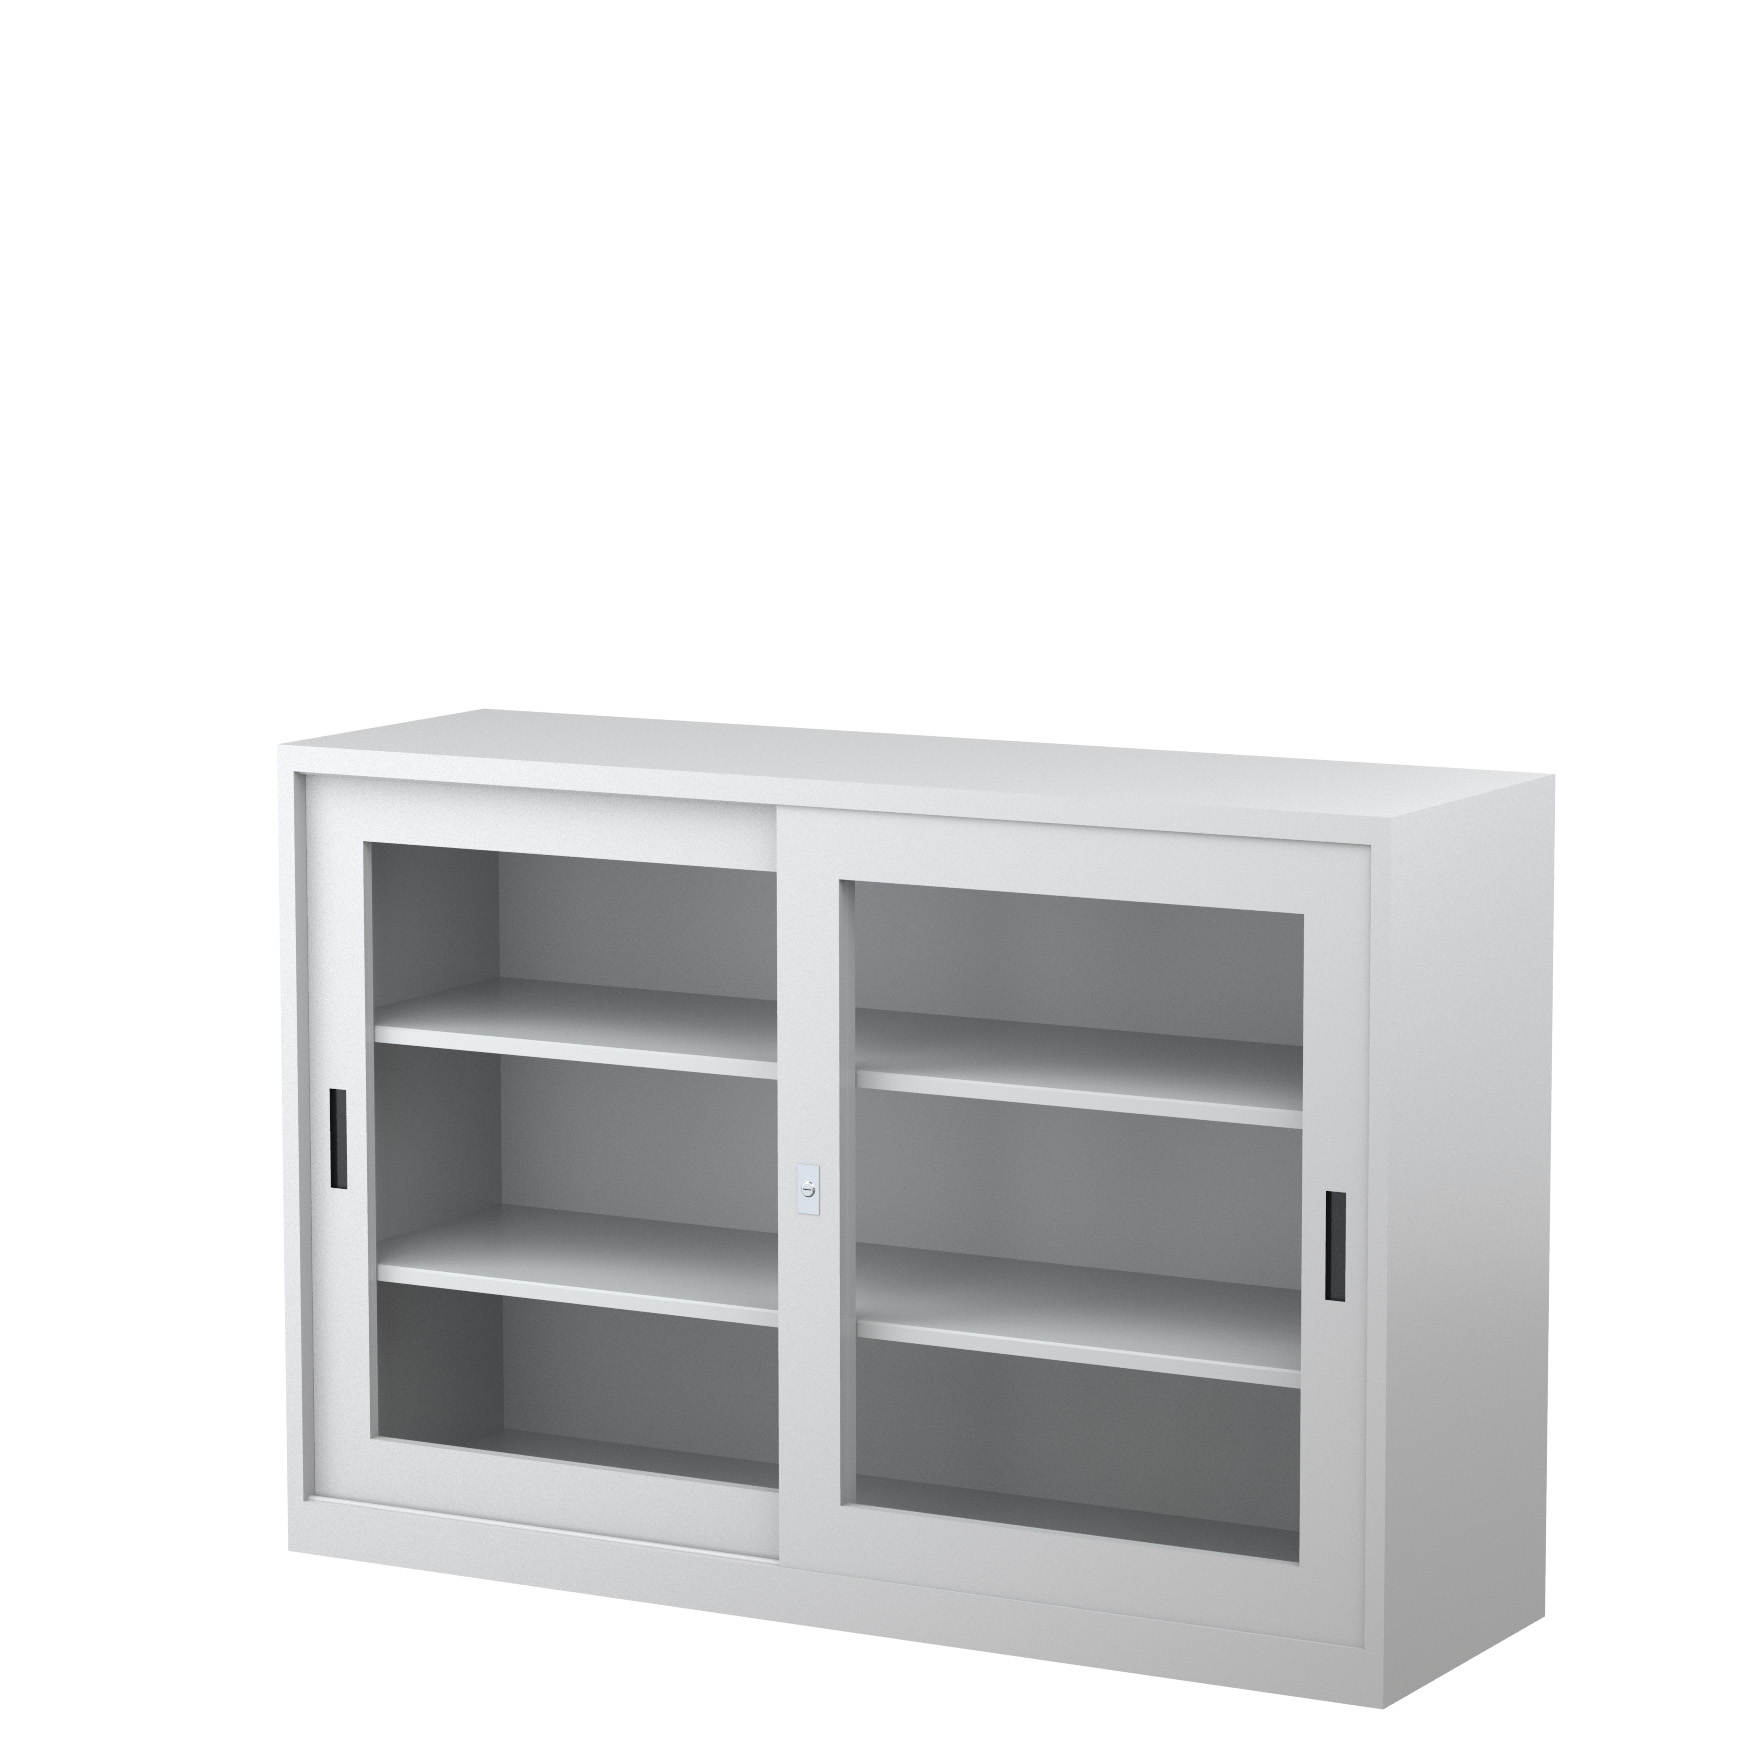 GD1830_1500 - STEELCO SG Cabinet 1830H x 1500W x 465D - 3 Shelves-GR7.jpg